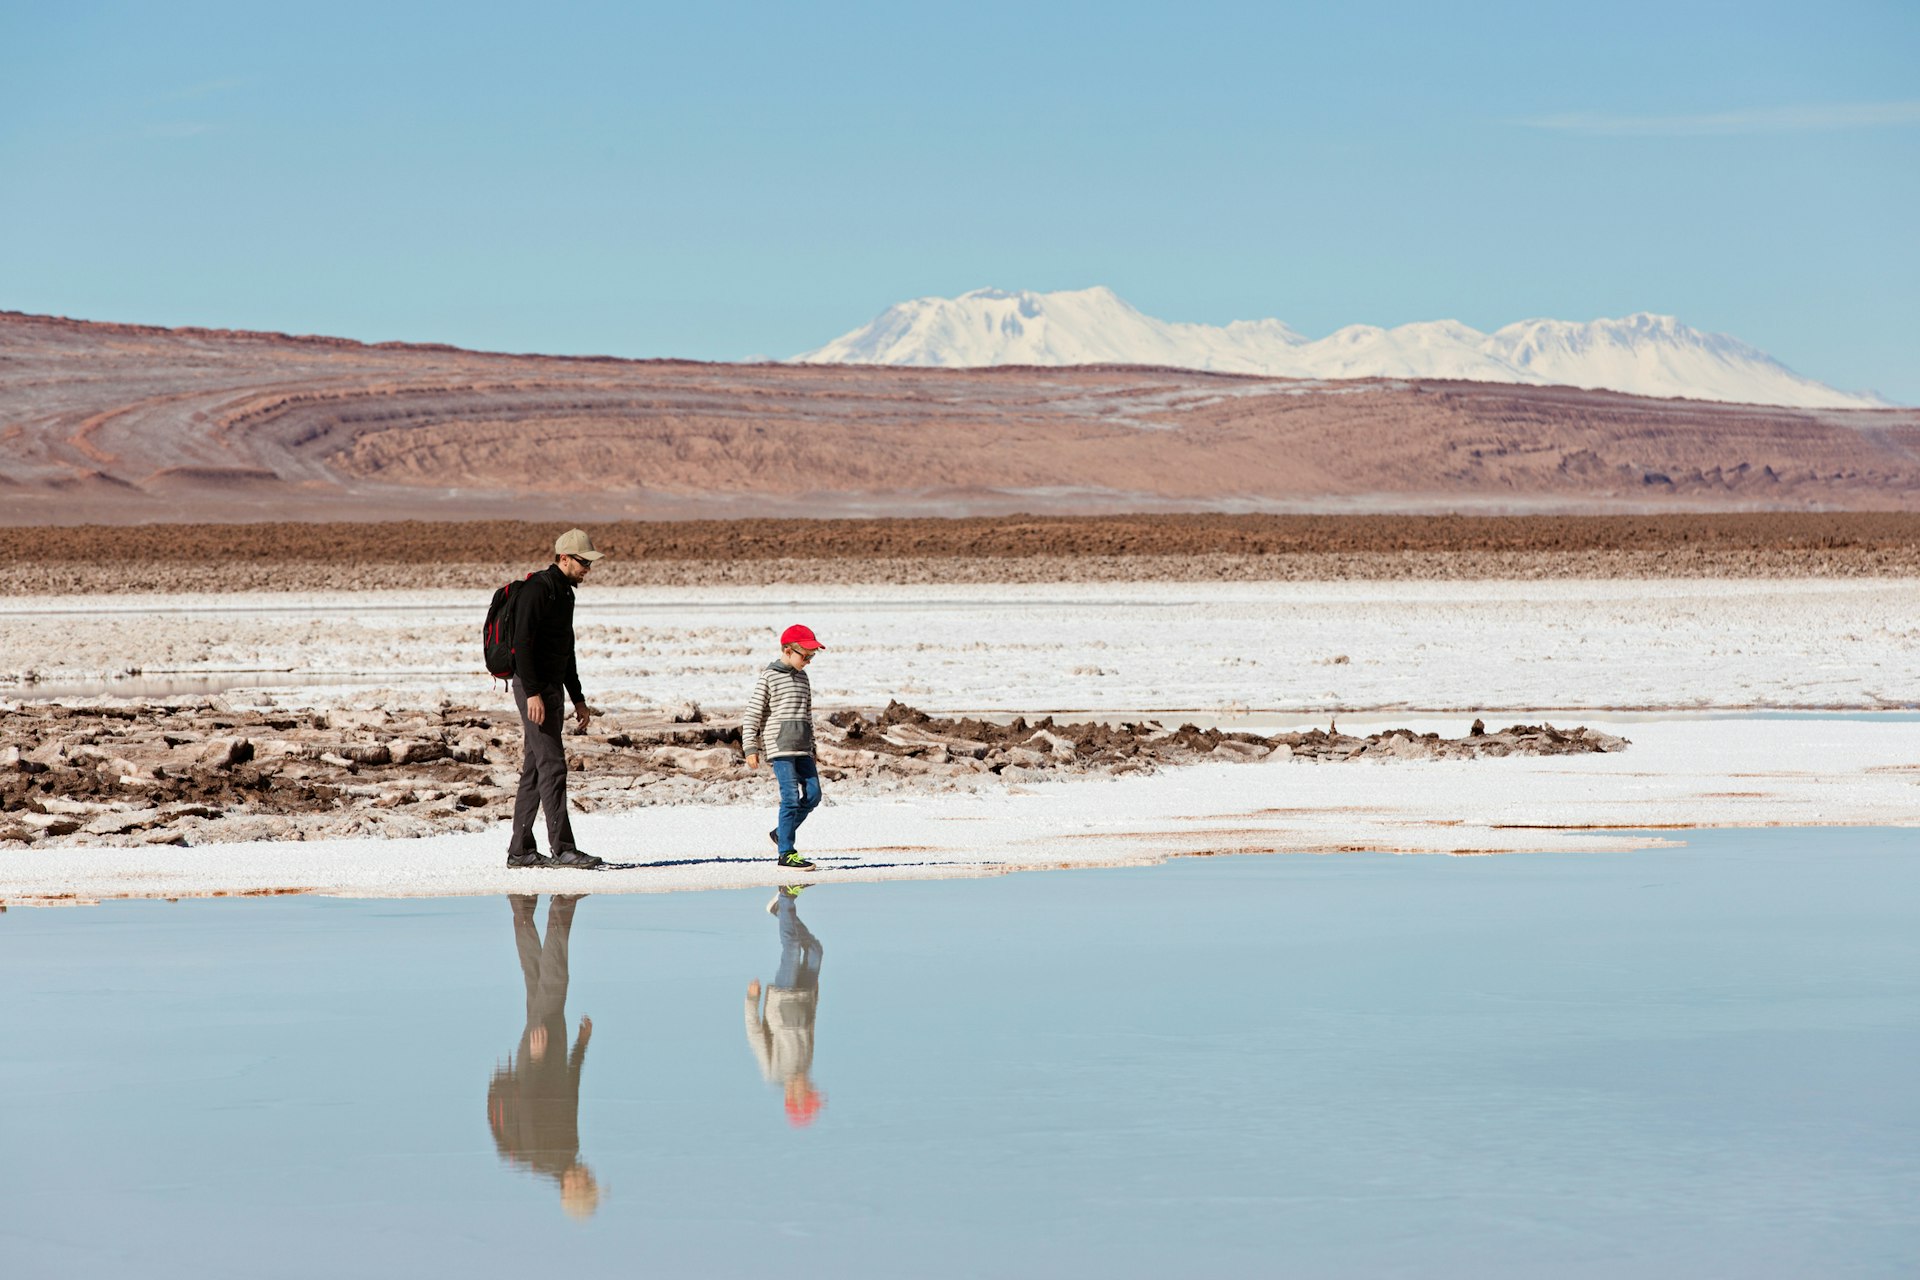 Un padre y su hijo caminan junto a un lago salado en una vasta zona desértica